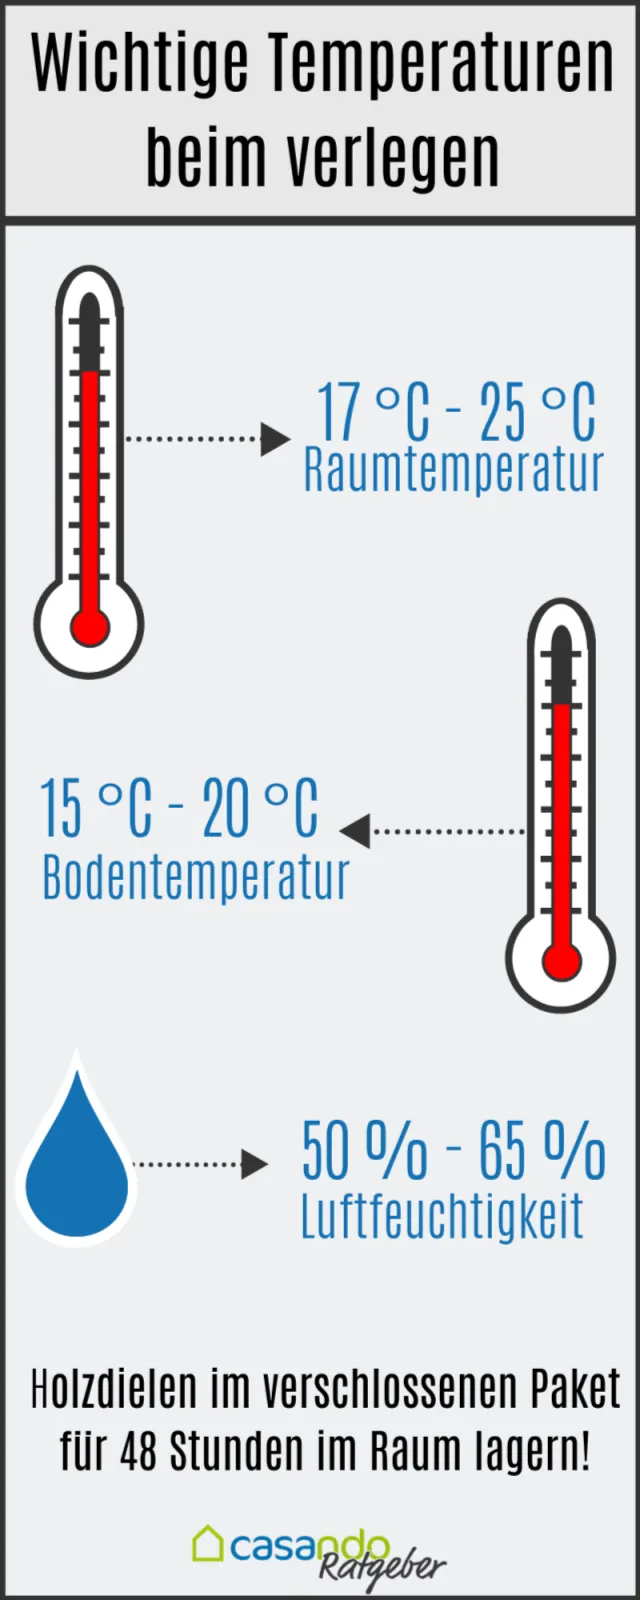 Wichtige-Temperaturen-beim-verlegen-640x1600.jpg